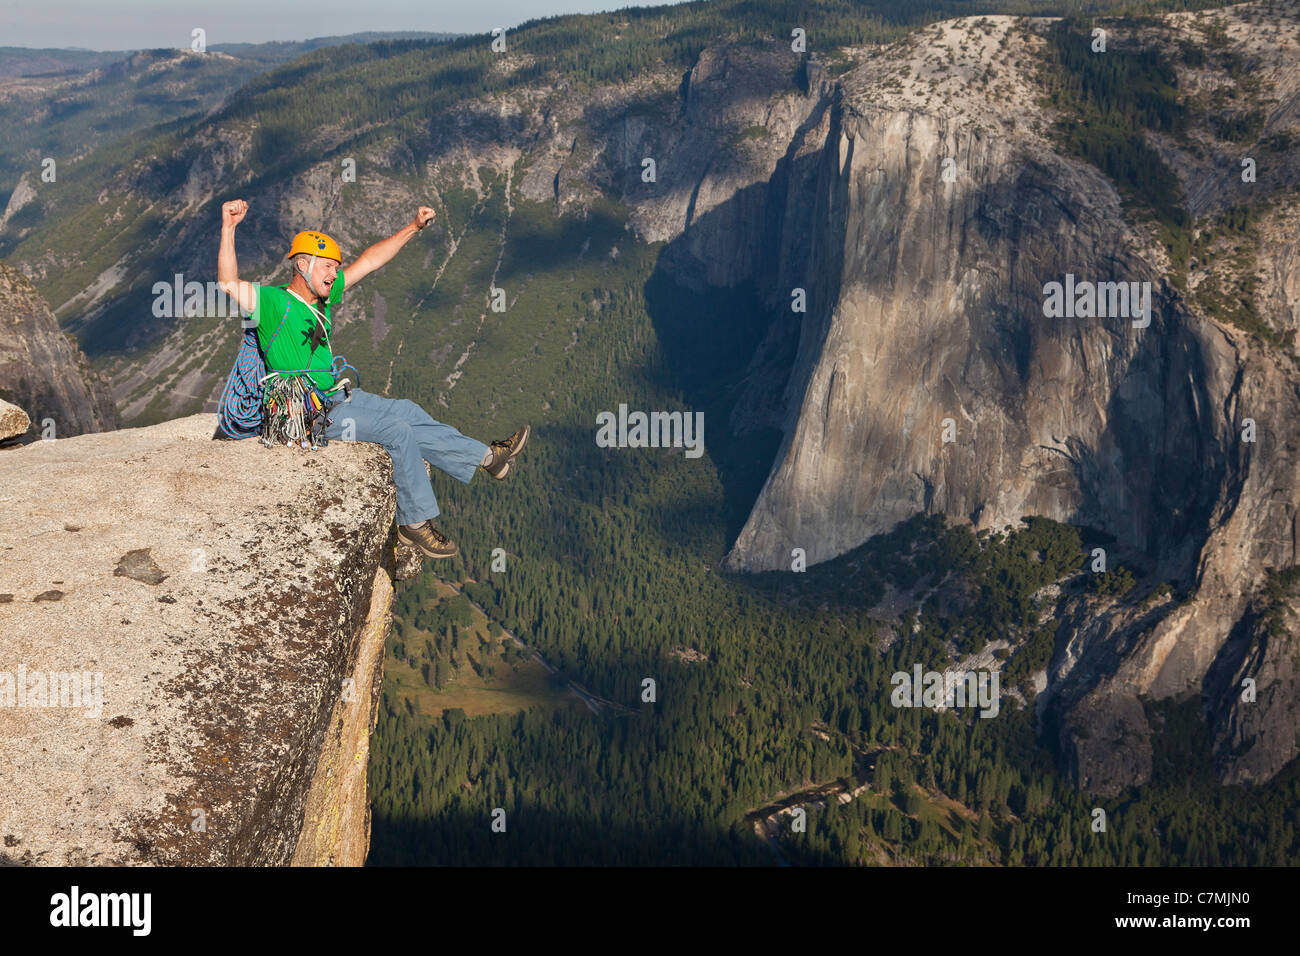 Maschio di rocciatore festeggia sul vertice dopo una salita di successo. Foto Stock